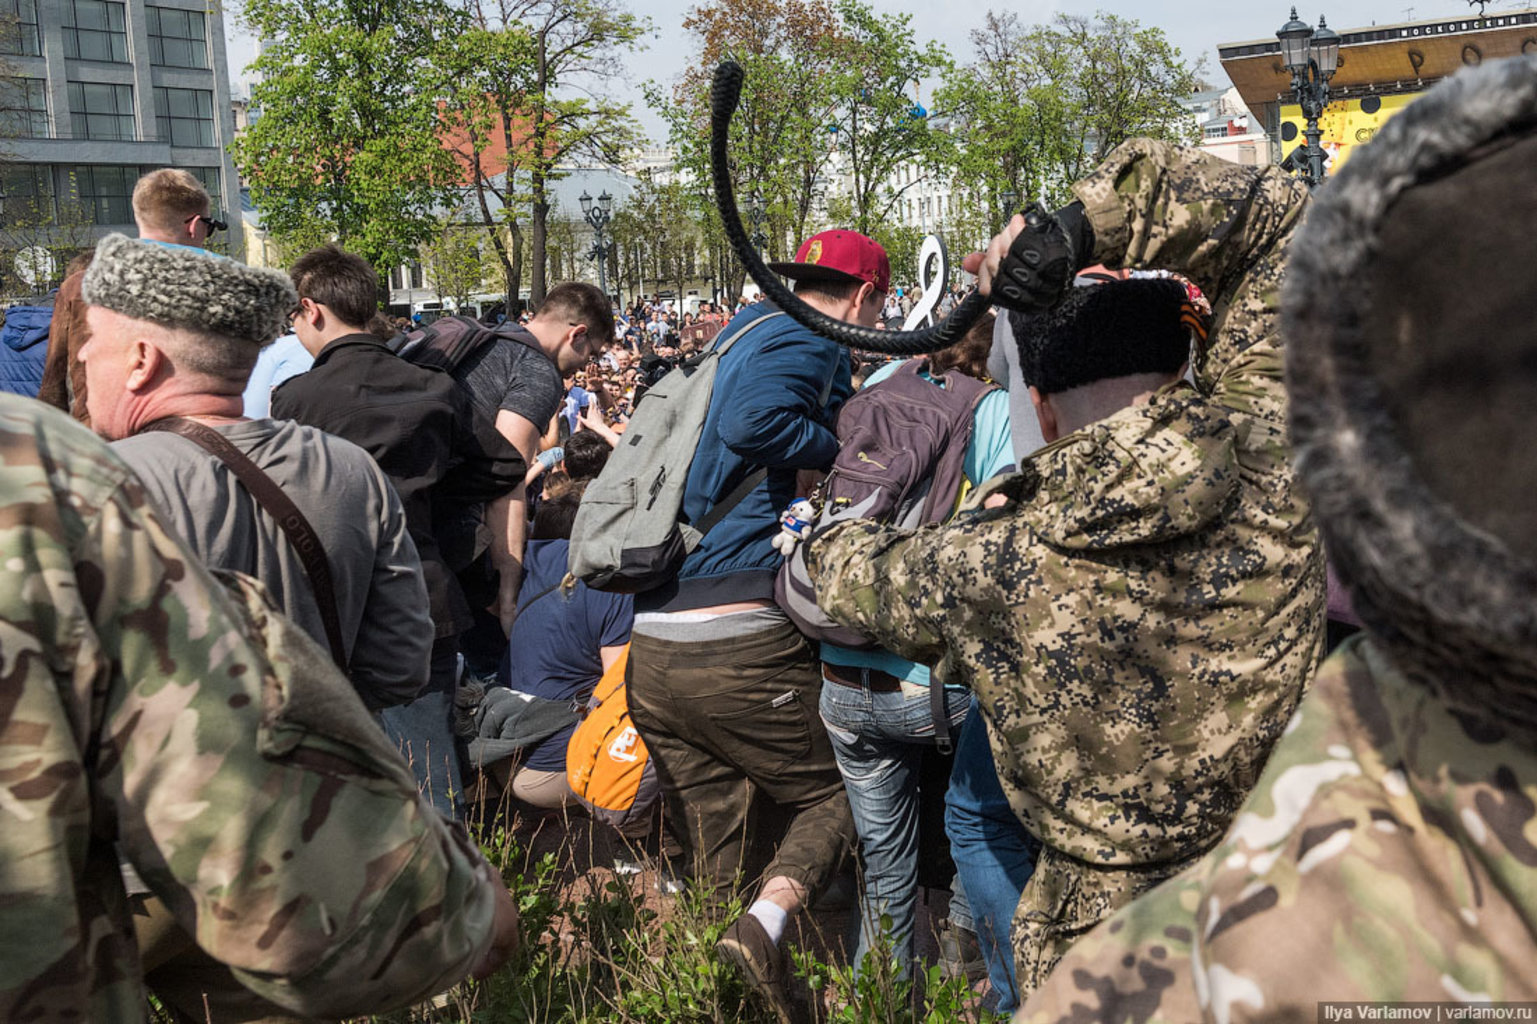 5 мая 2018 года. Казаки нагайками разгоняют митинг в Москве. Казаки избивают людей нагайками. Казаки с нагайками в Москве.